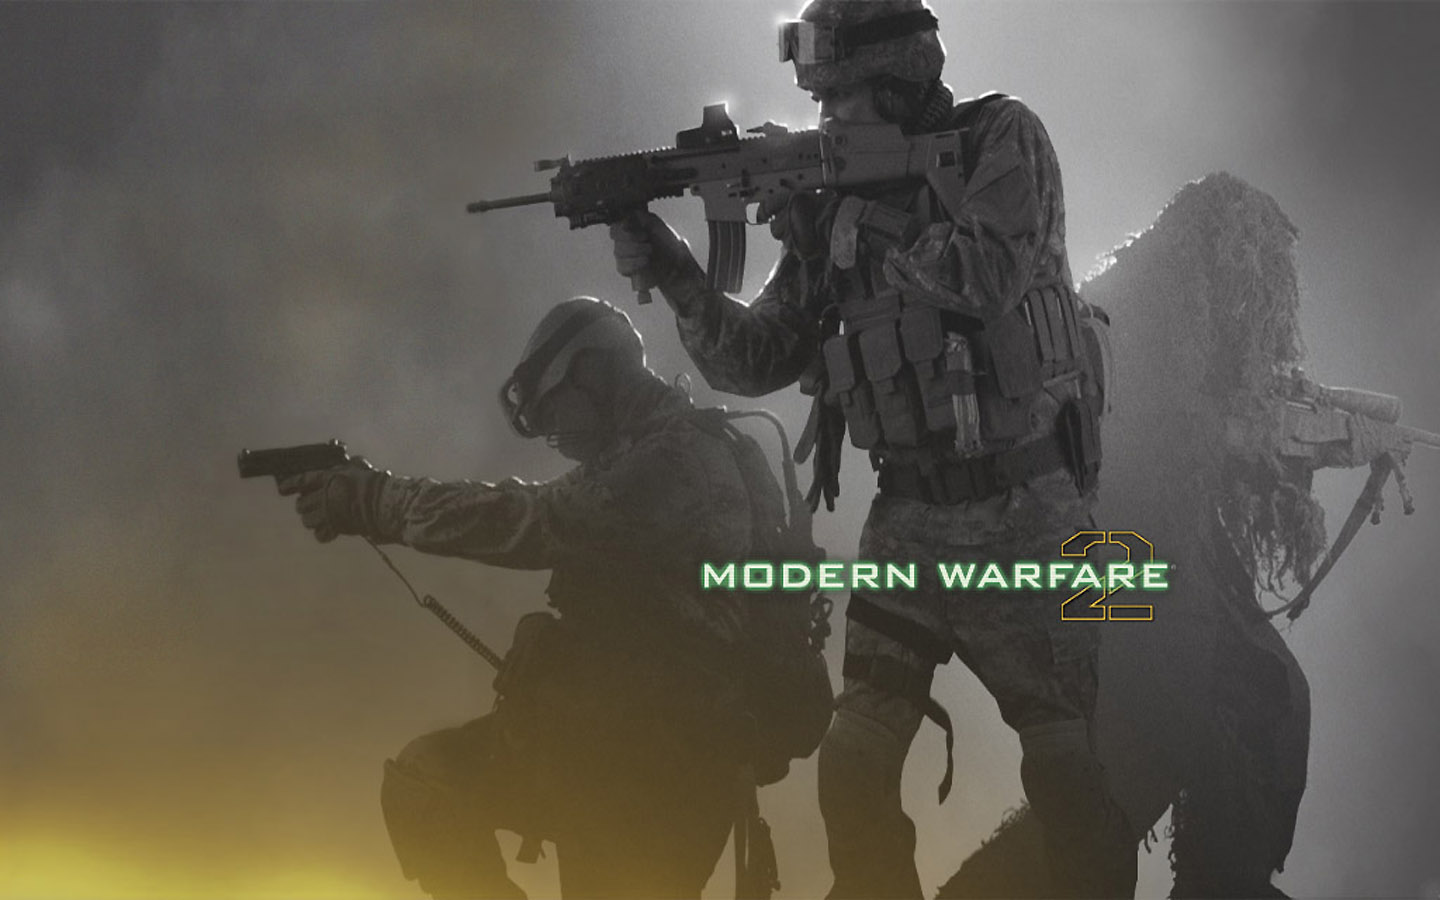 mw2 wallpaper,soldier,gunfighter,movie,games,airsoft